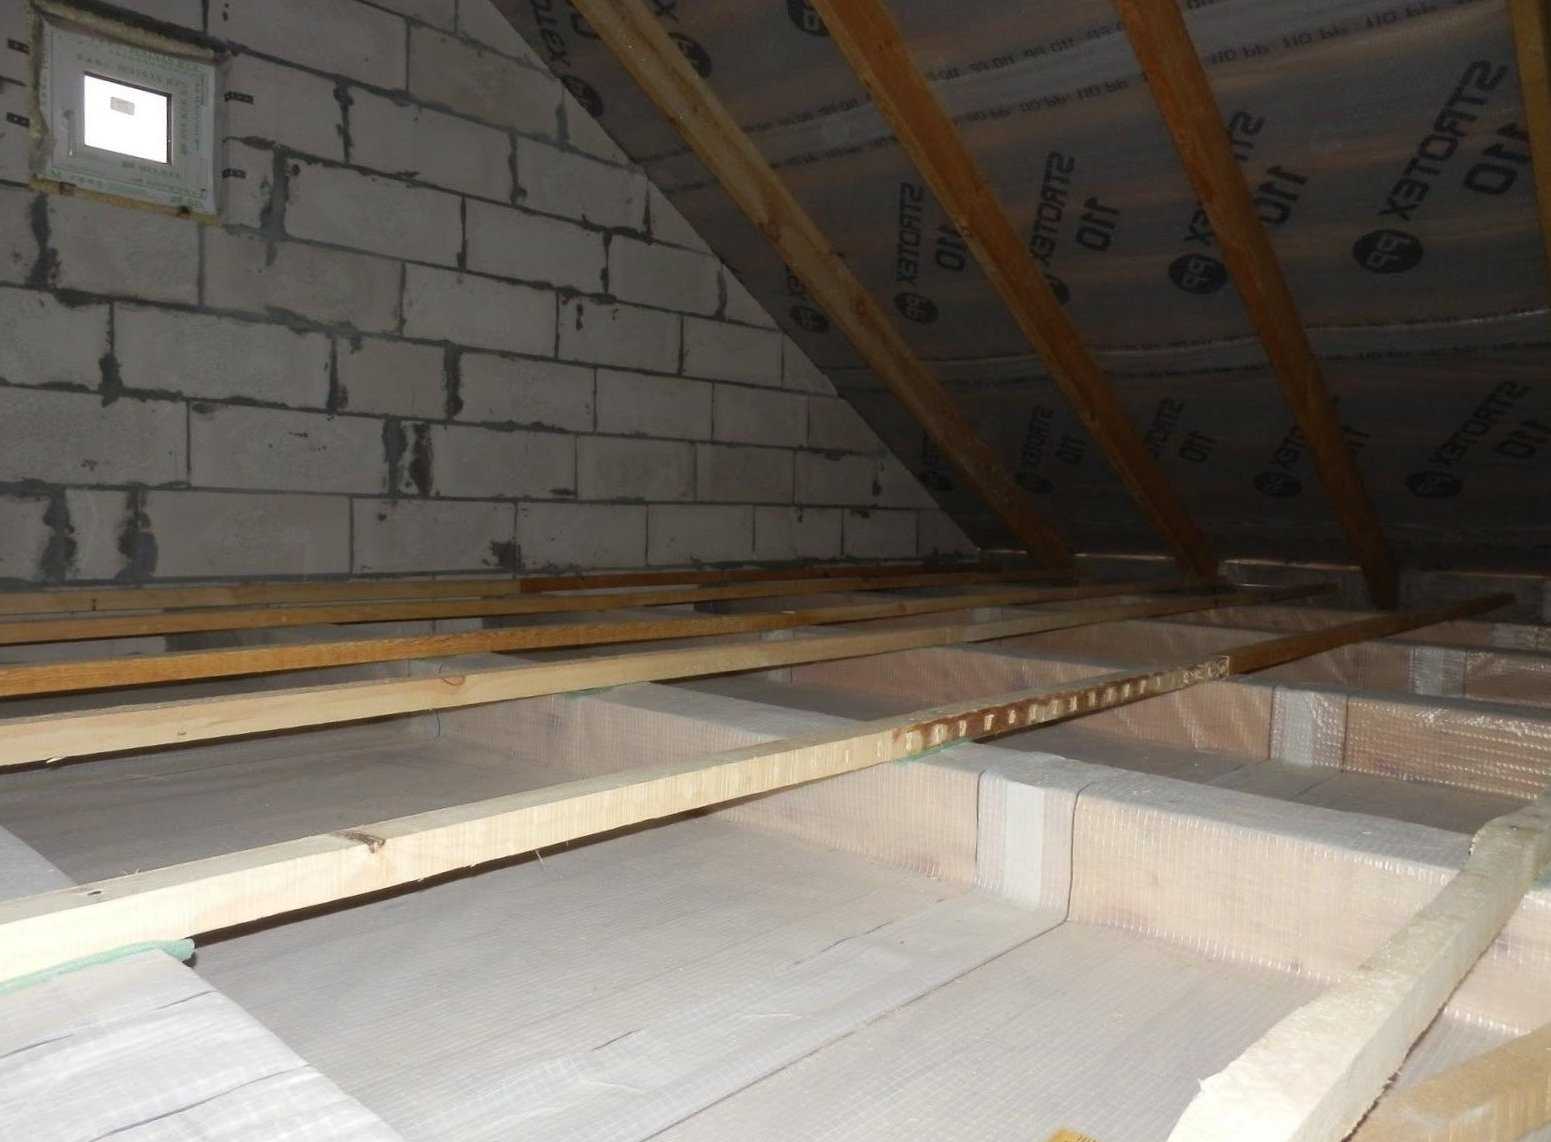 Минвата для утепления потолка: плотность и толщина материала, отделка керамзитом и минватой в частном доме